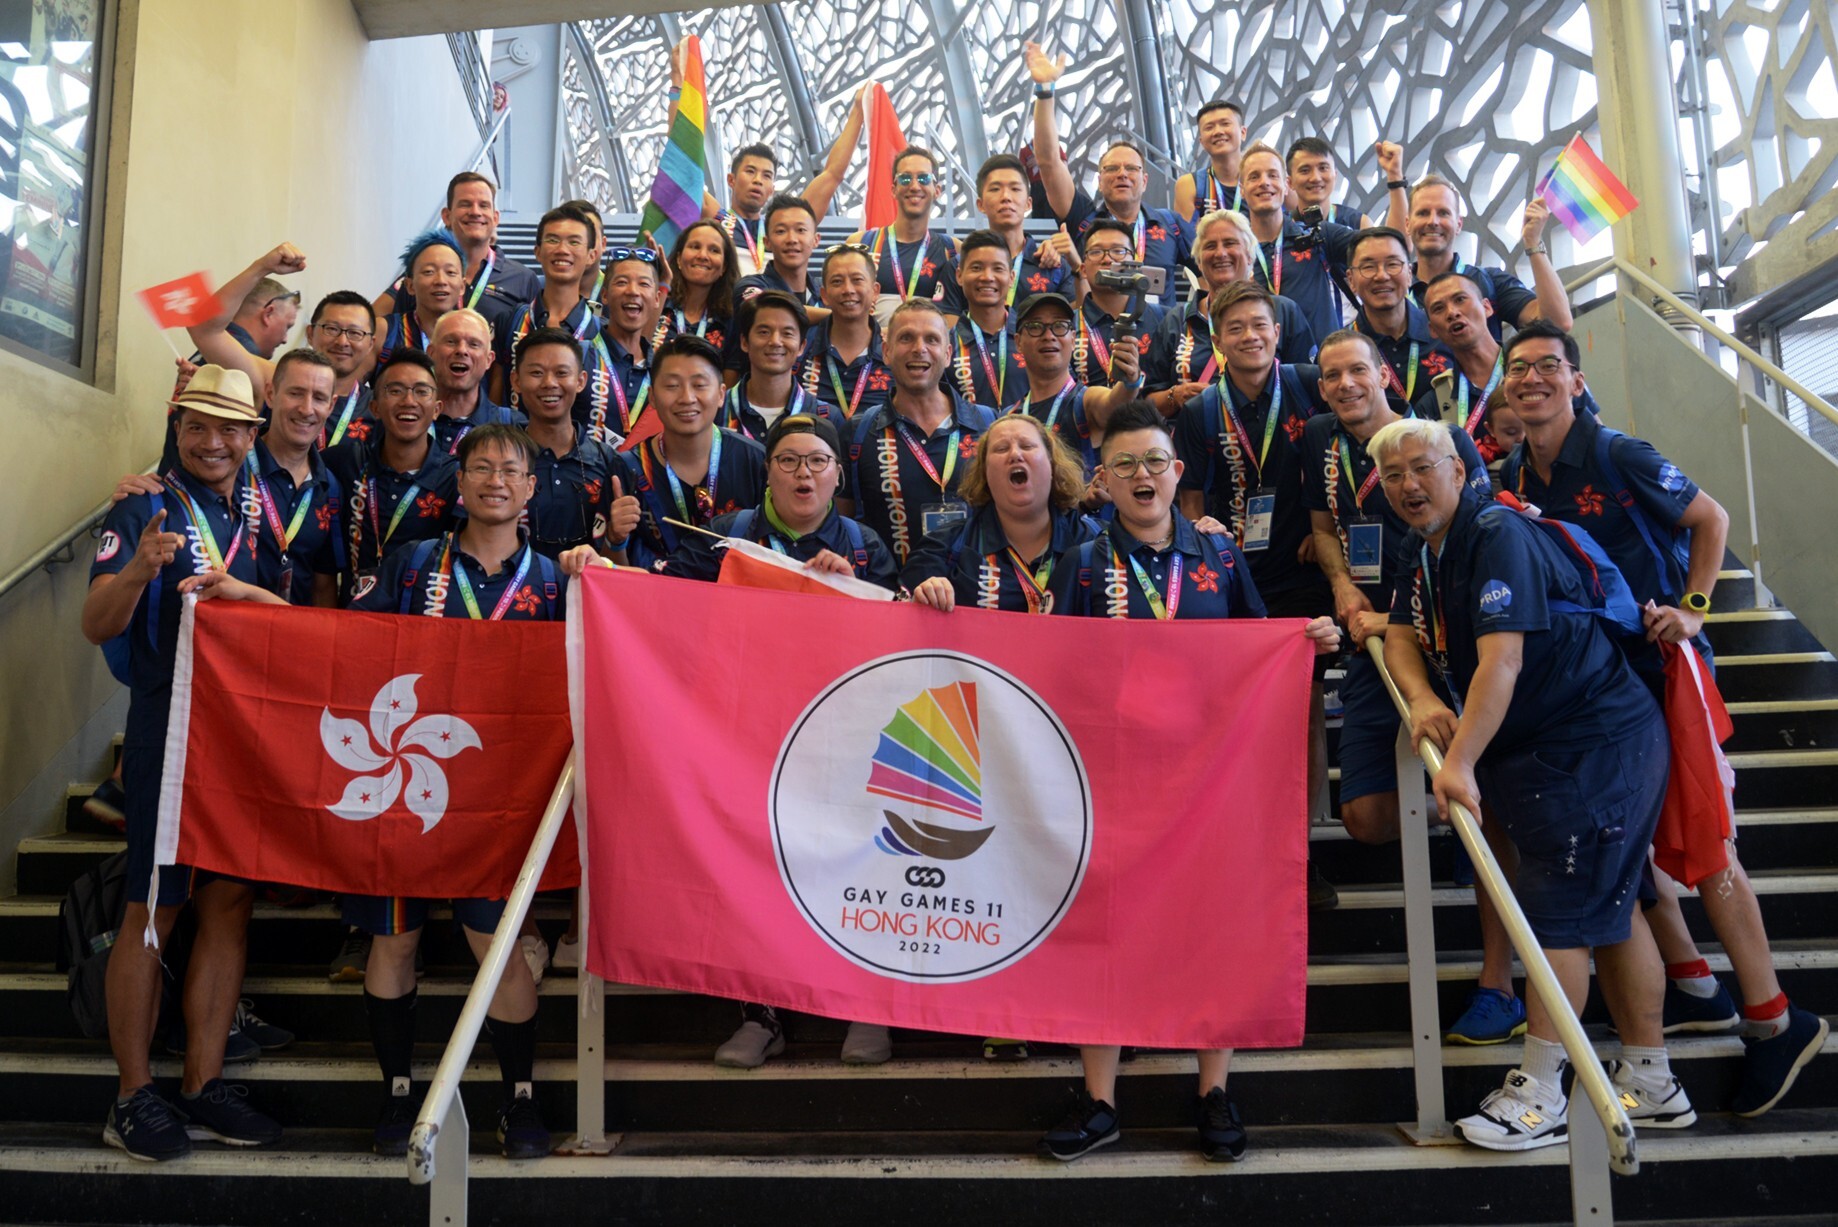 Hong Kong won the bid to hold the 2022 Gay Games after applying in 2017. Photo: Gay Games Hong Kong